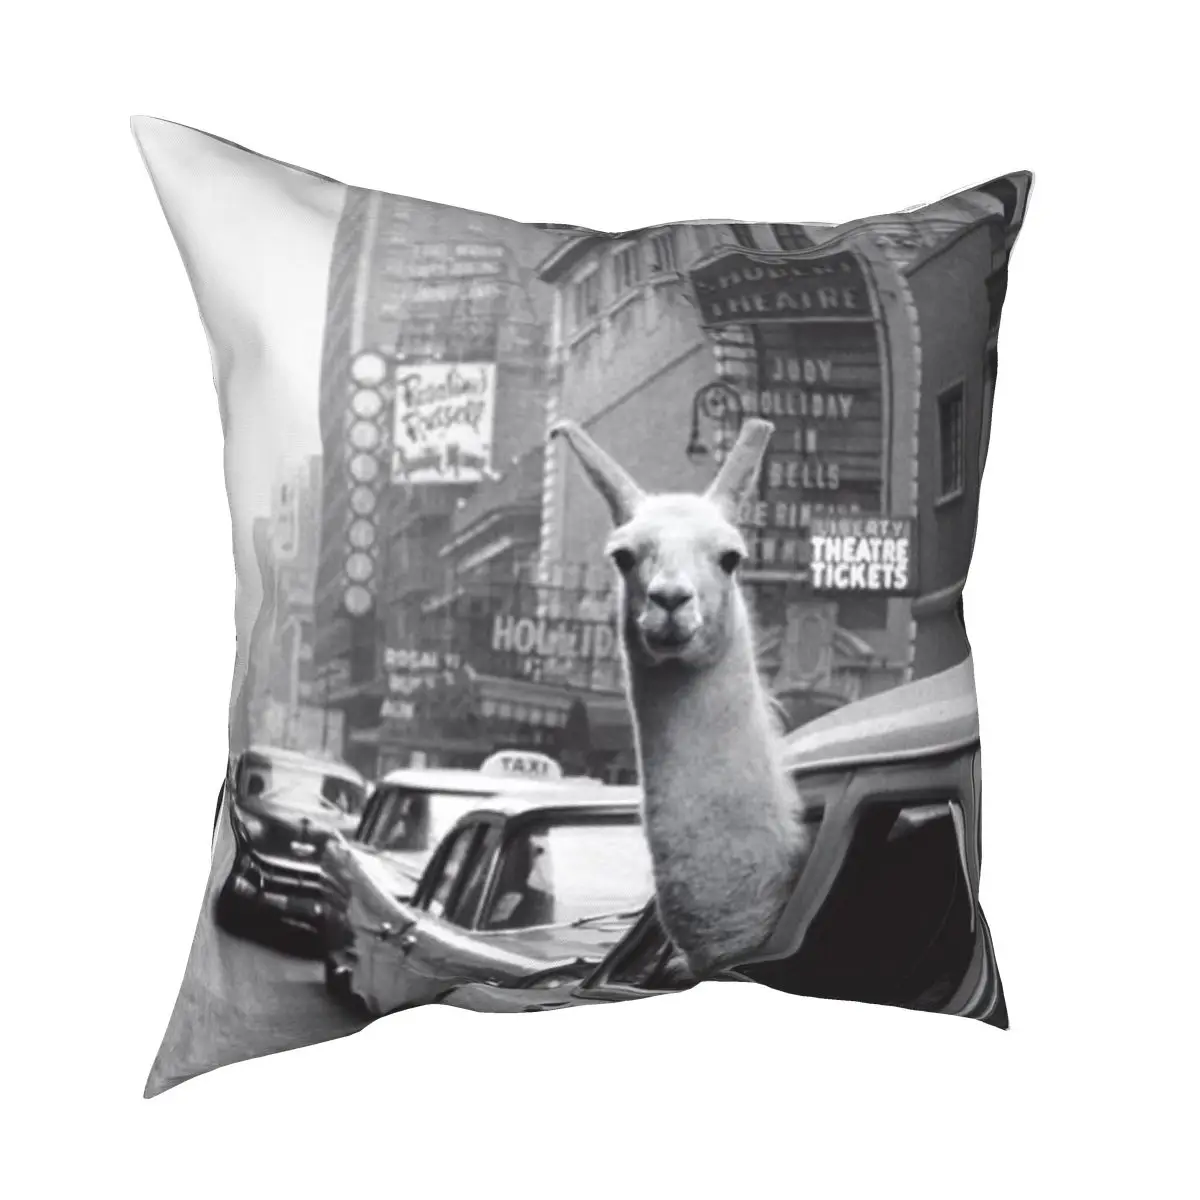 

Нью-Йорк ламы наволочка с животным принтом чехол для подушки из полиэстера подарок, скидка, накидка для подушки, декоративная наволочка на м...